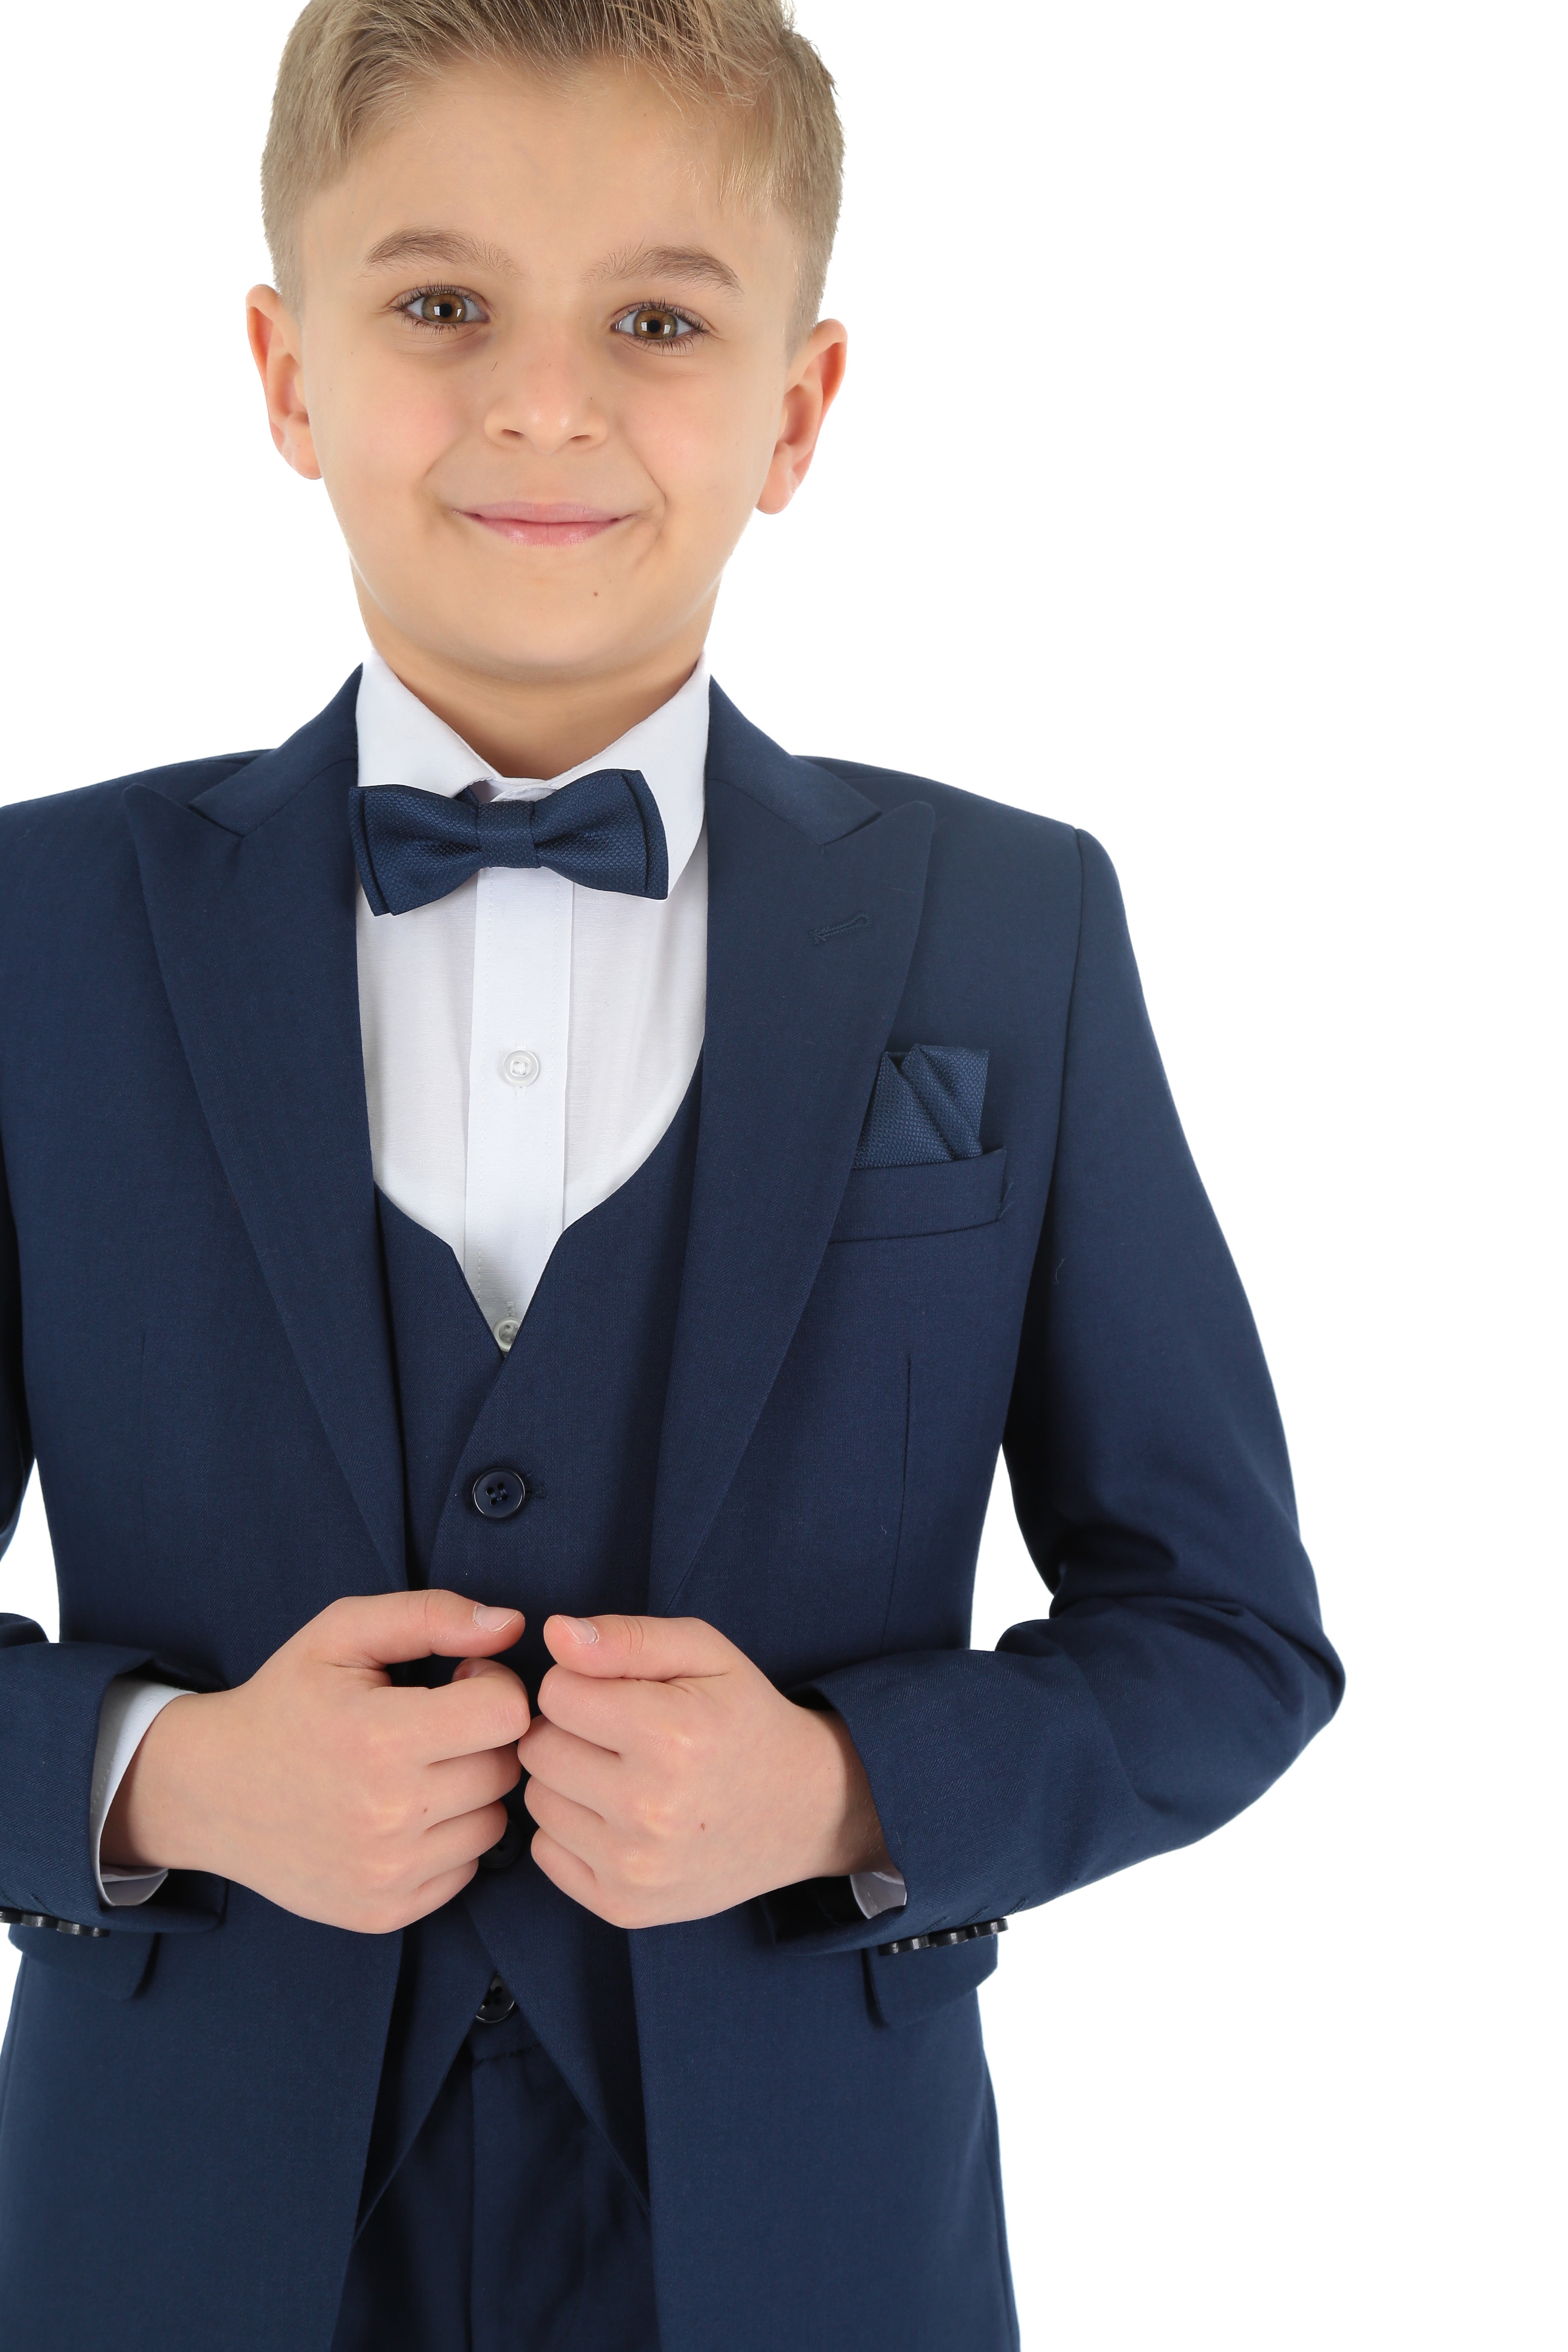 1-15 Yaş Erkek Çocuk King Özel Tasarım Takım Elbise 6 Parça - Indıgo